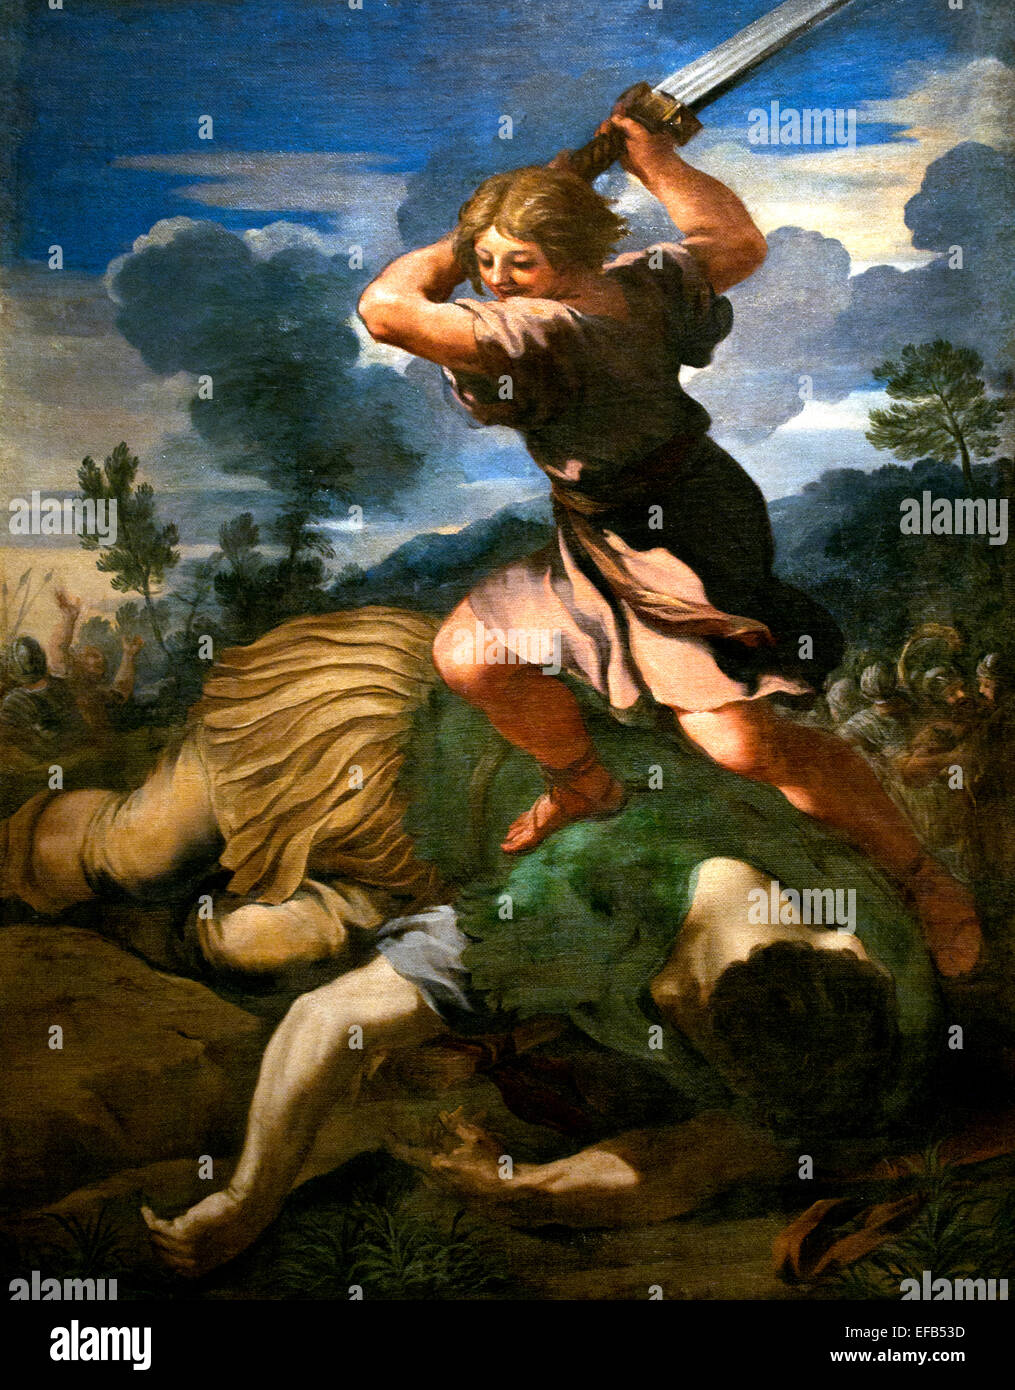 David killing Goliath by Cortona, Pietro da (Berrettini) (1596-1669) Pinacoteca Vatican Museum Rome Italy Stock Photo